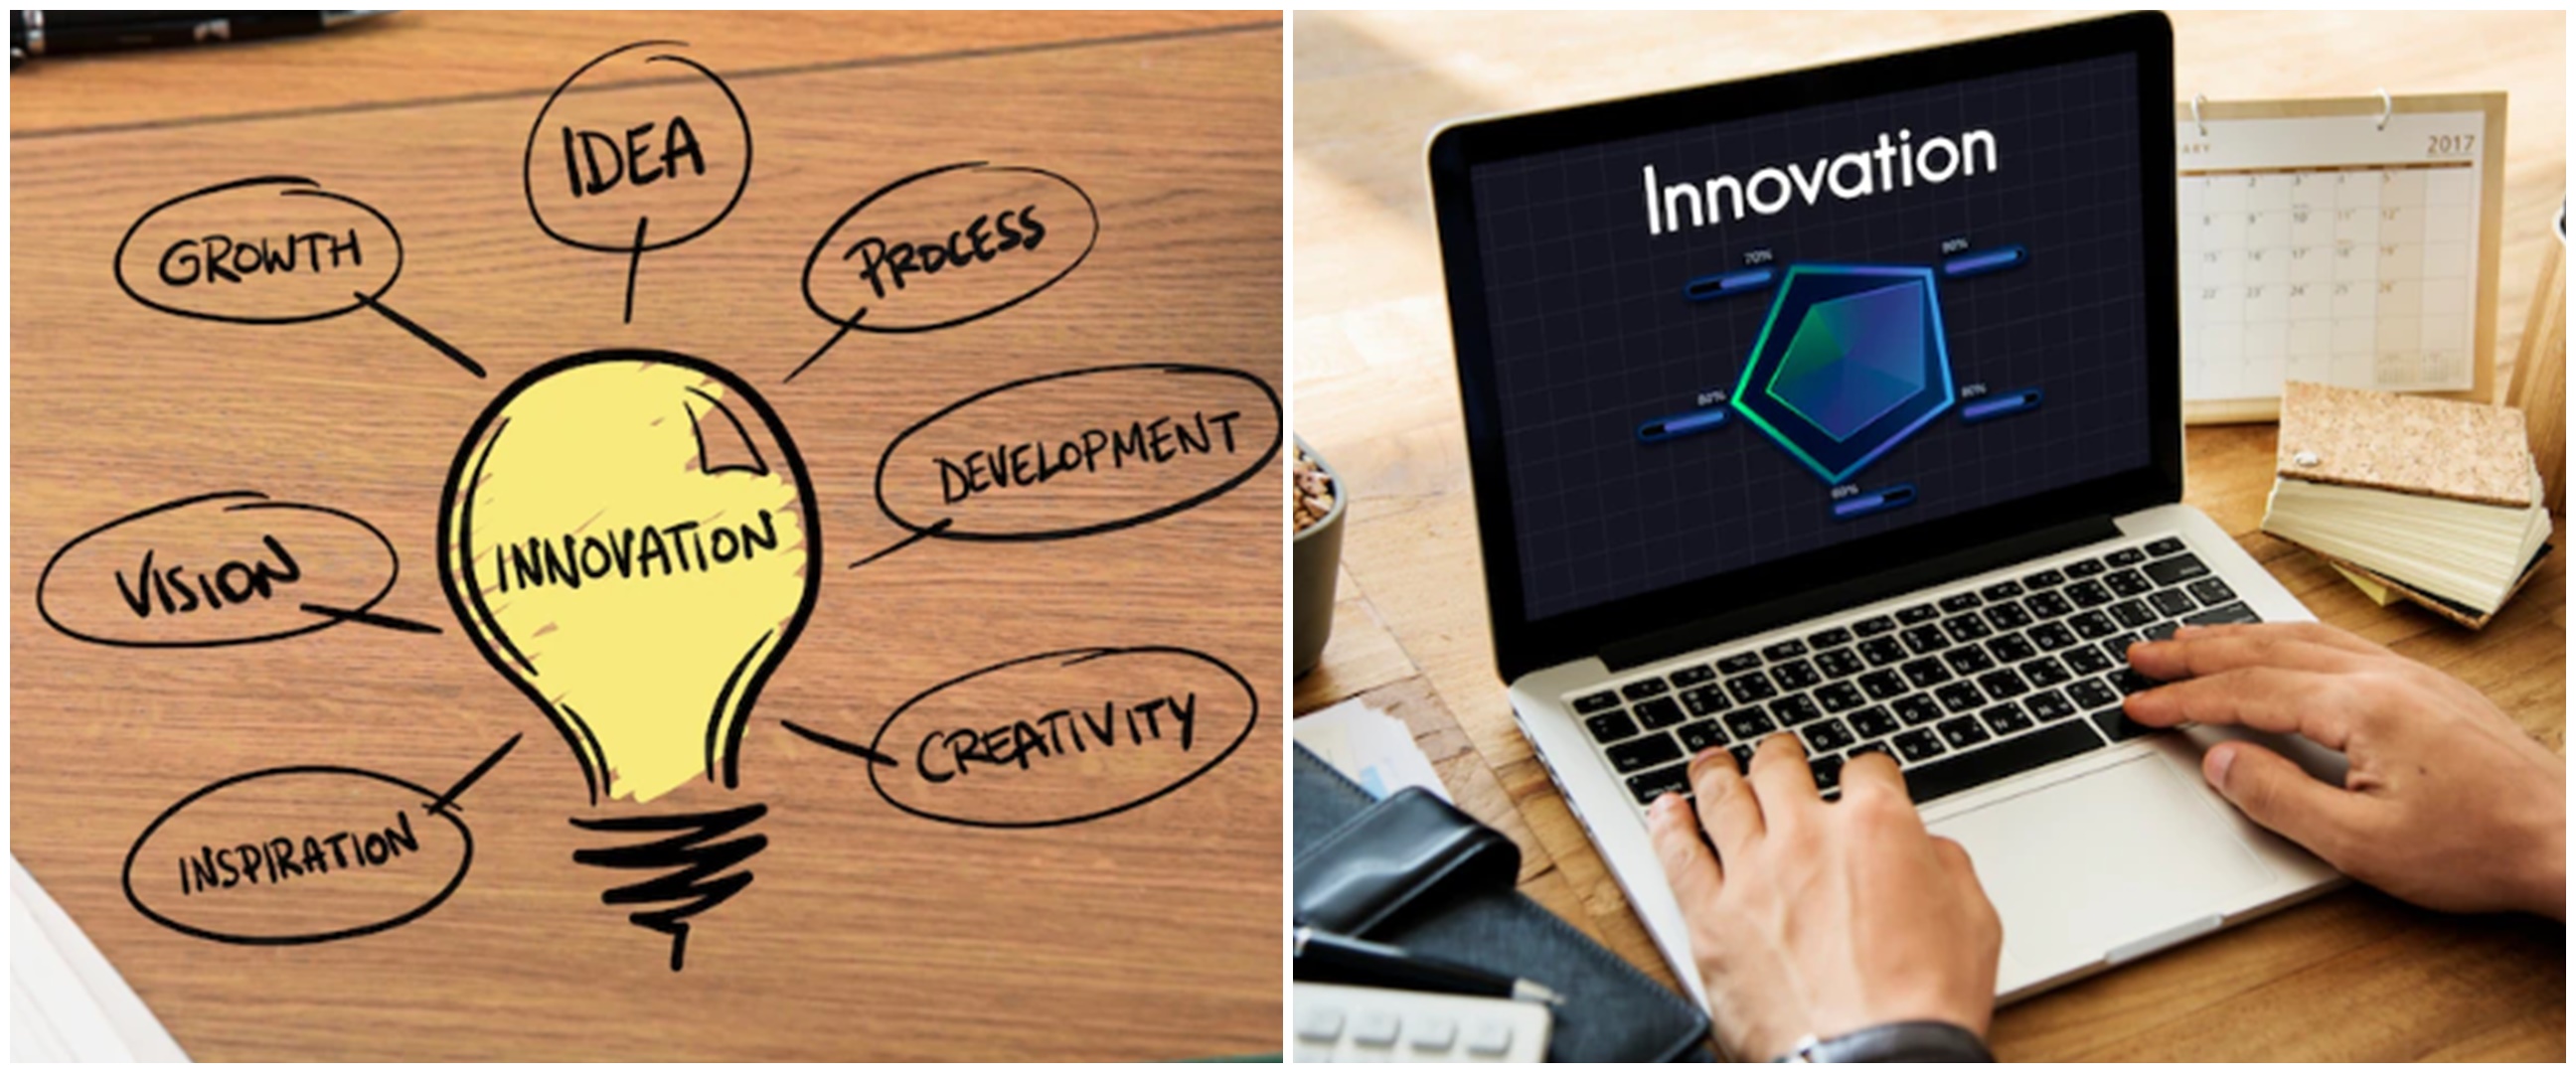 Inovasi adalah pembaharuan ide, ketahui tujuan dan ciri-cirinya